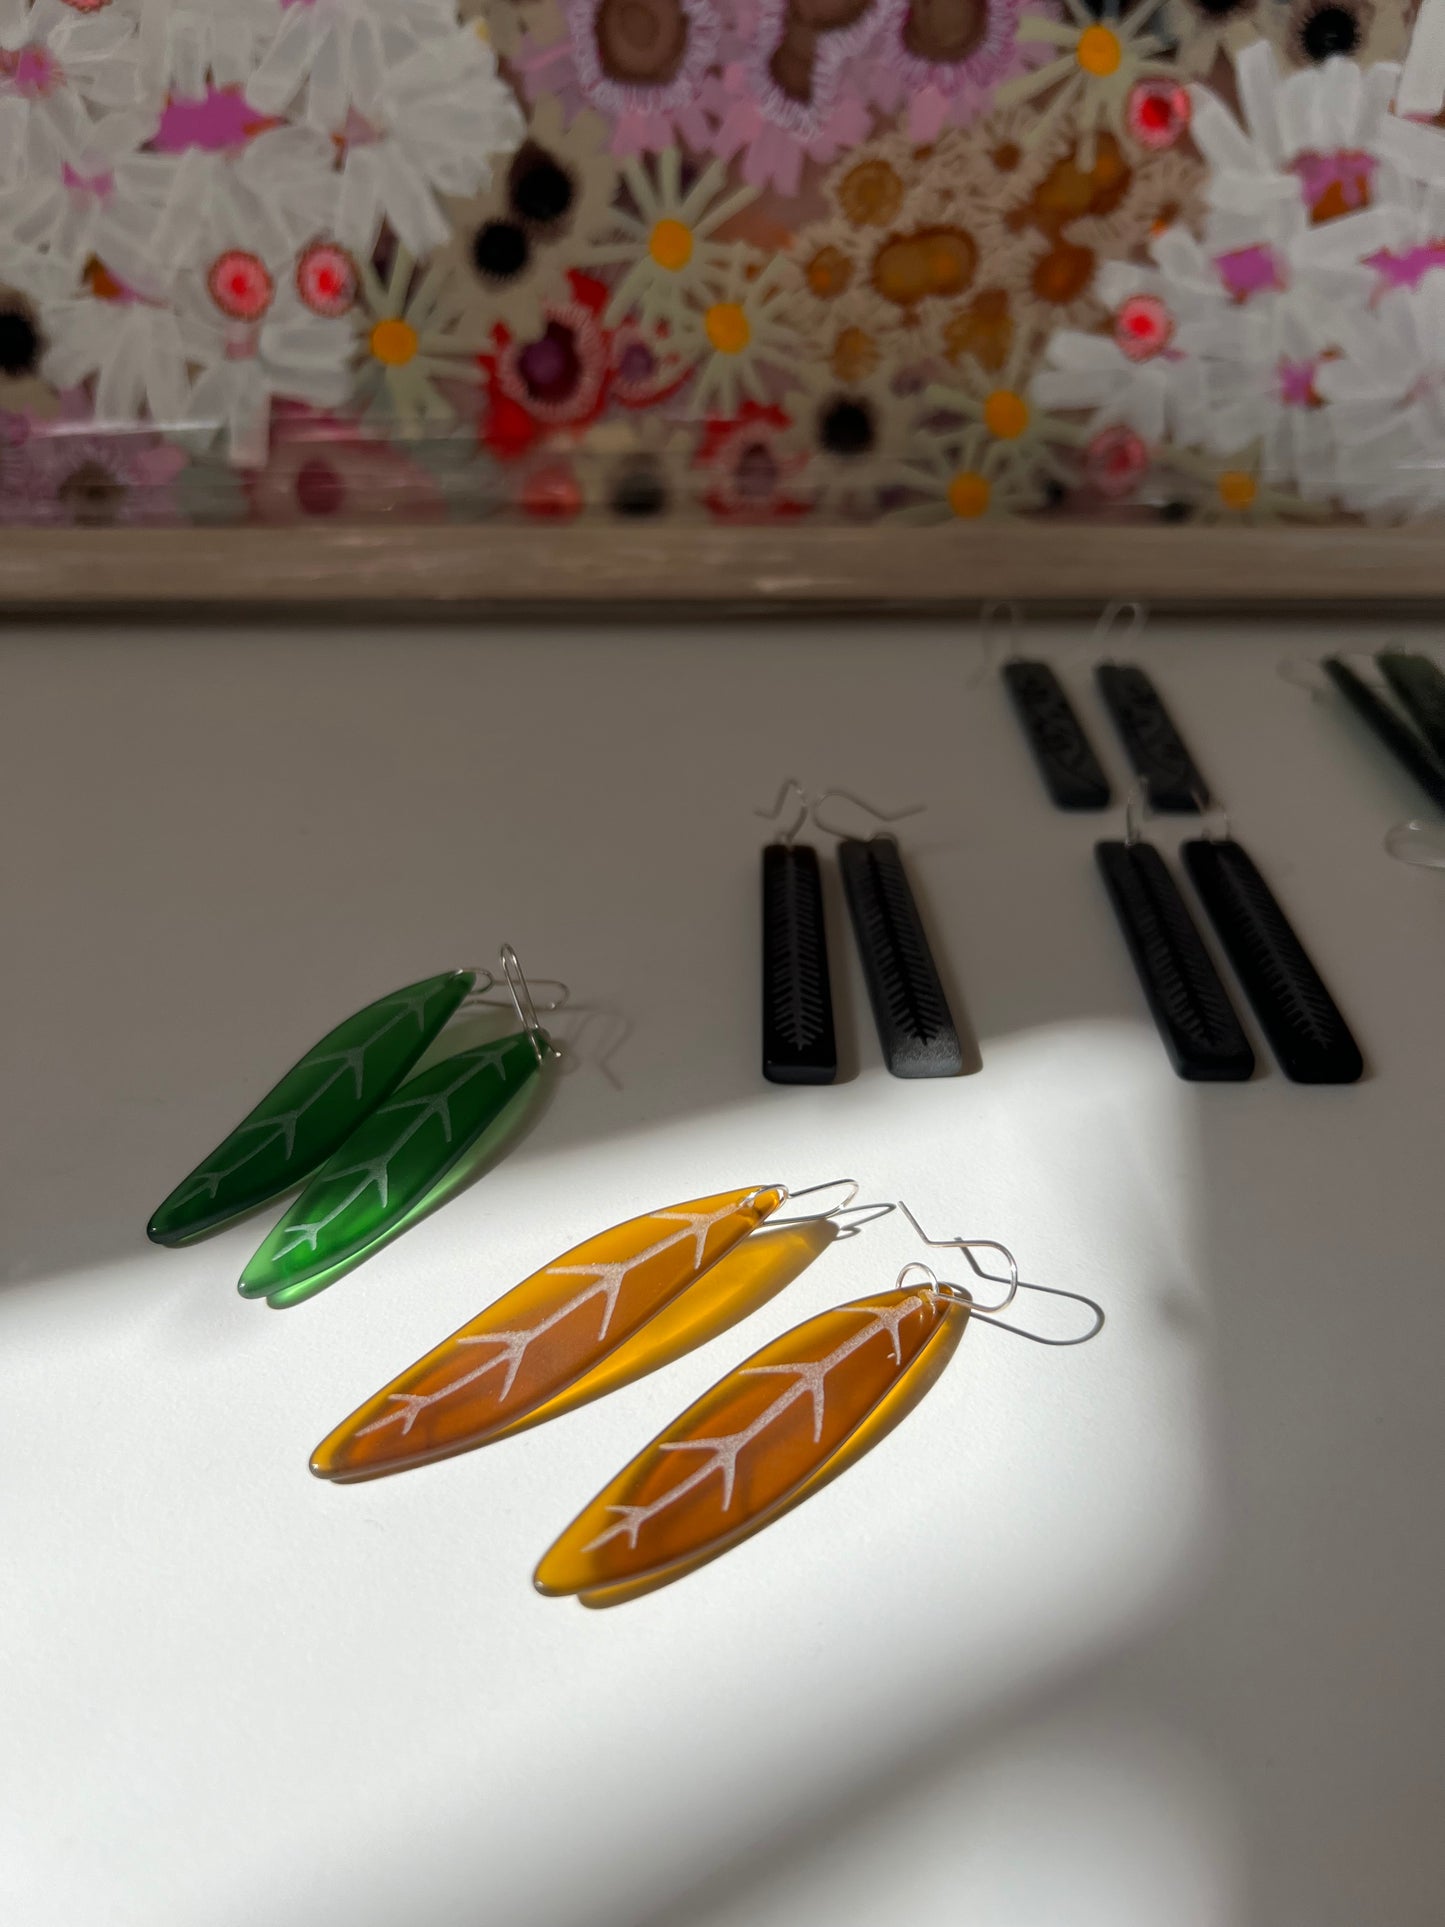 Tawa Leaf Earrings - Amber Glass